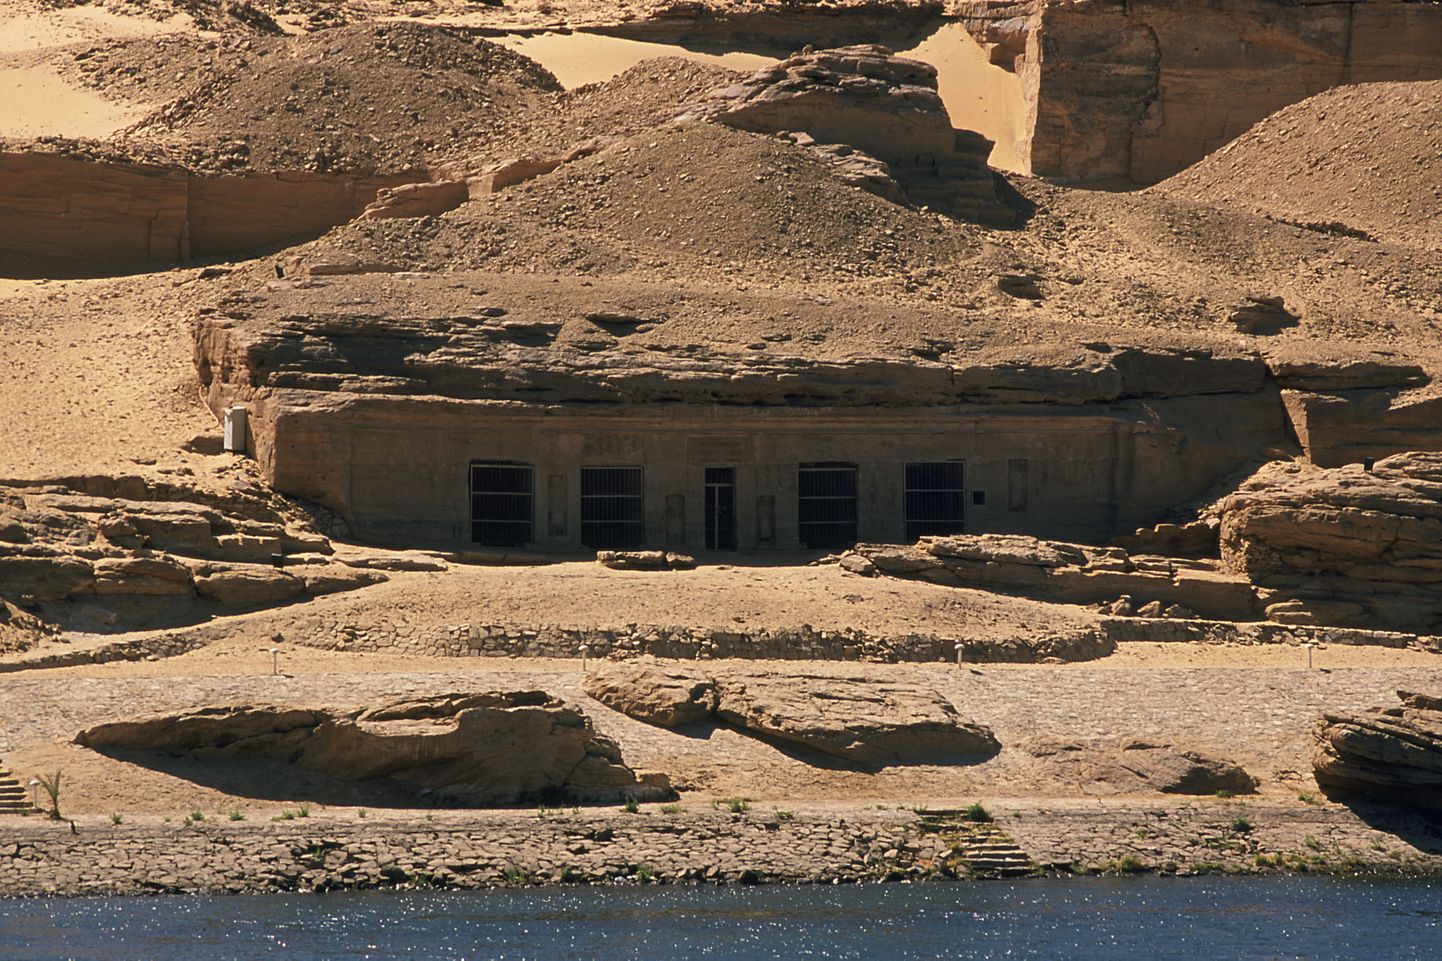 Gebel el-Silsila piirkond Egiptuses, kust massihaud leiti.